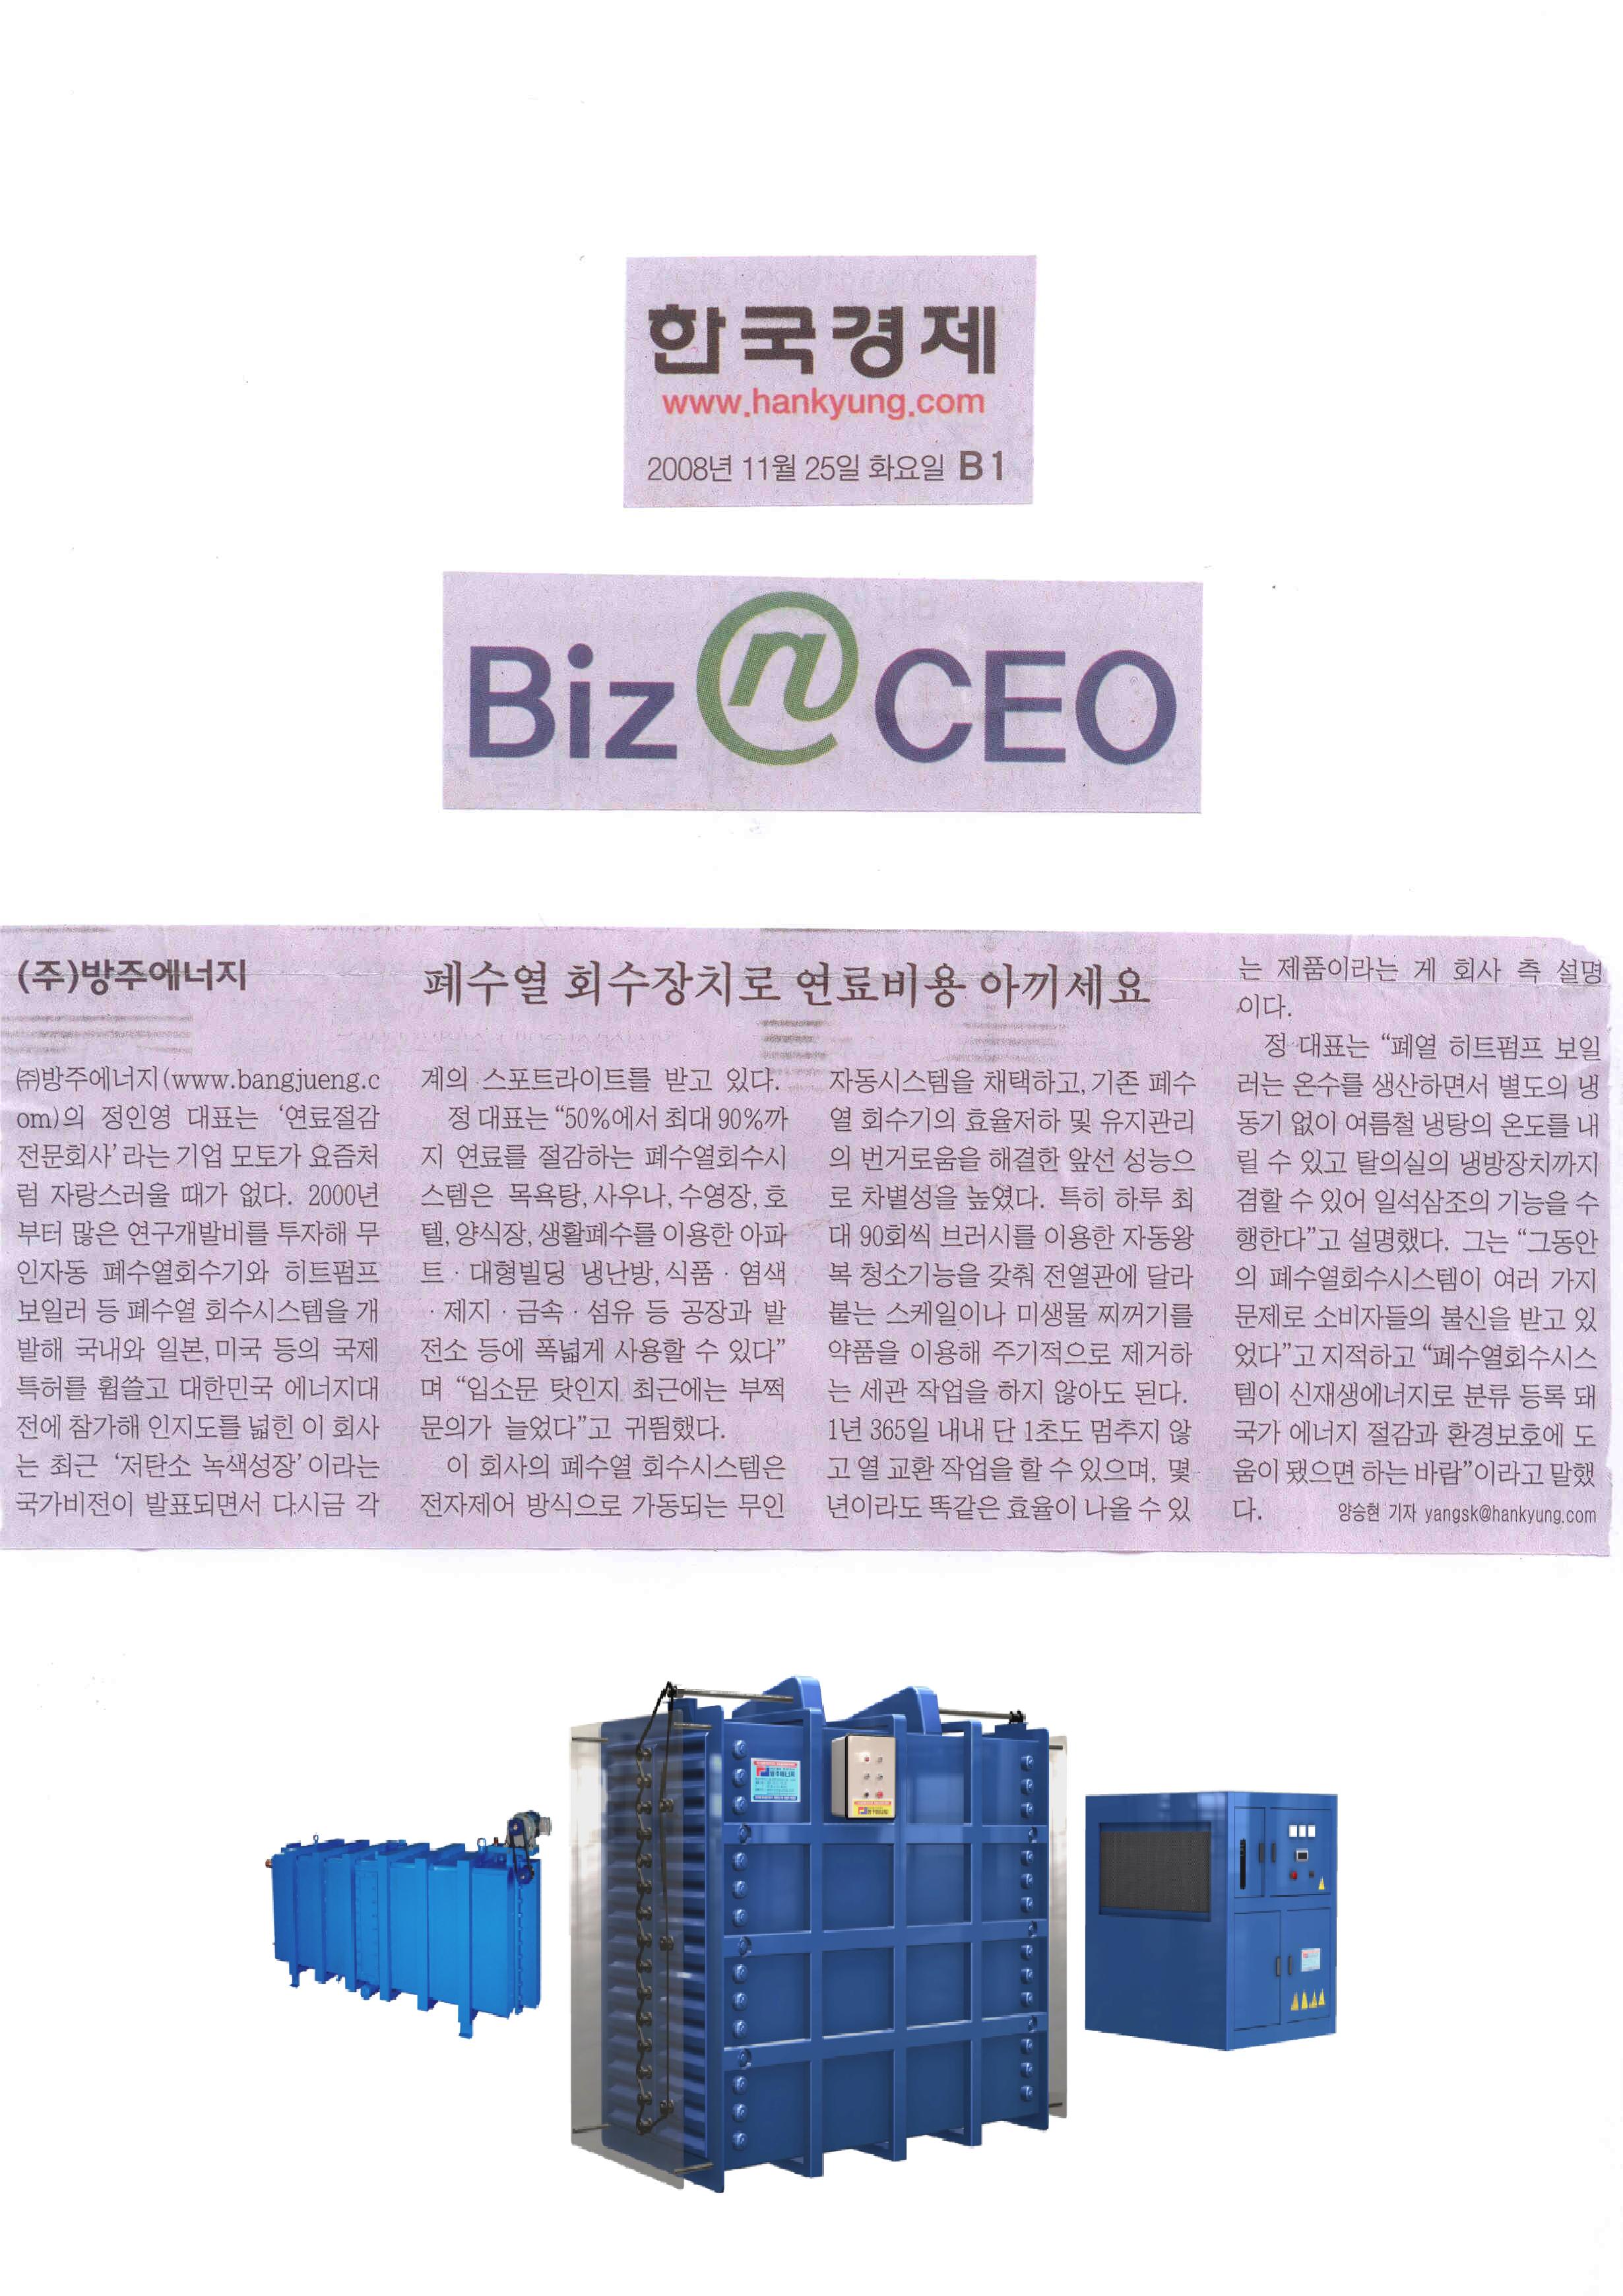 [한국경제신문] '2008년 11월 25일'에 방주에너지 기사글